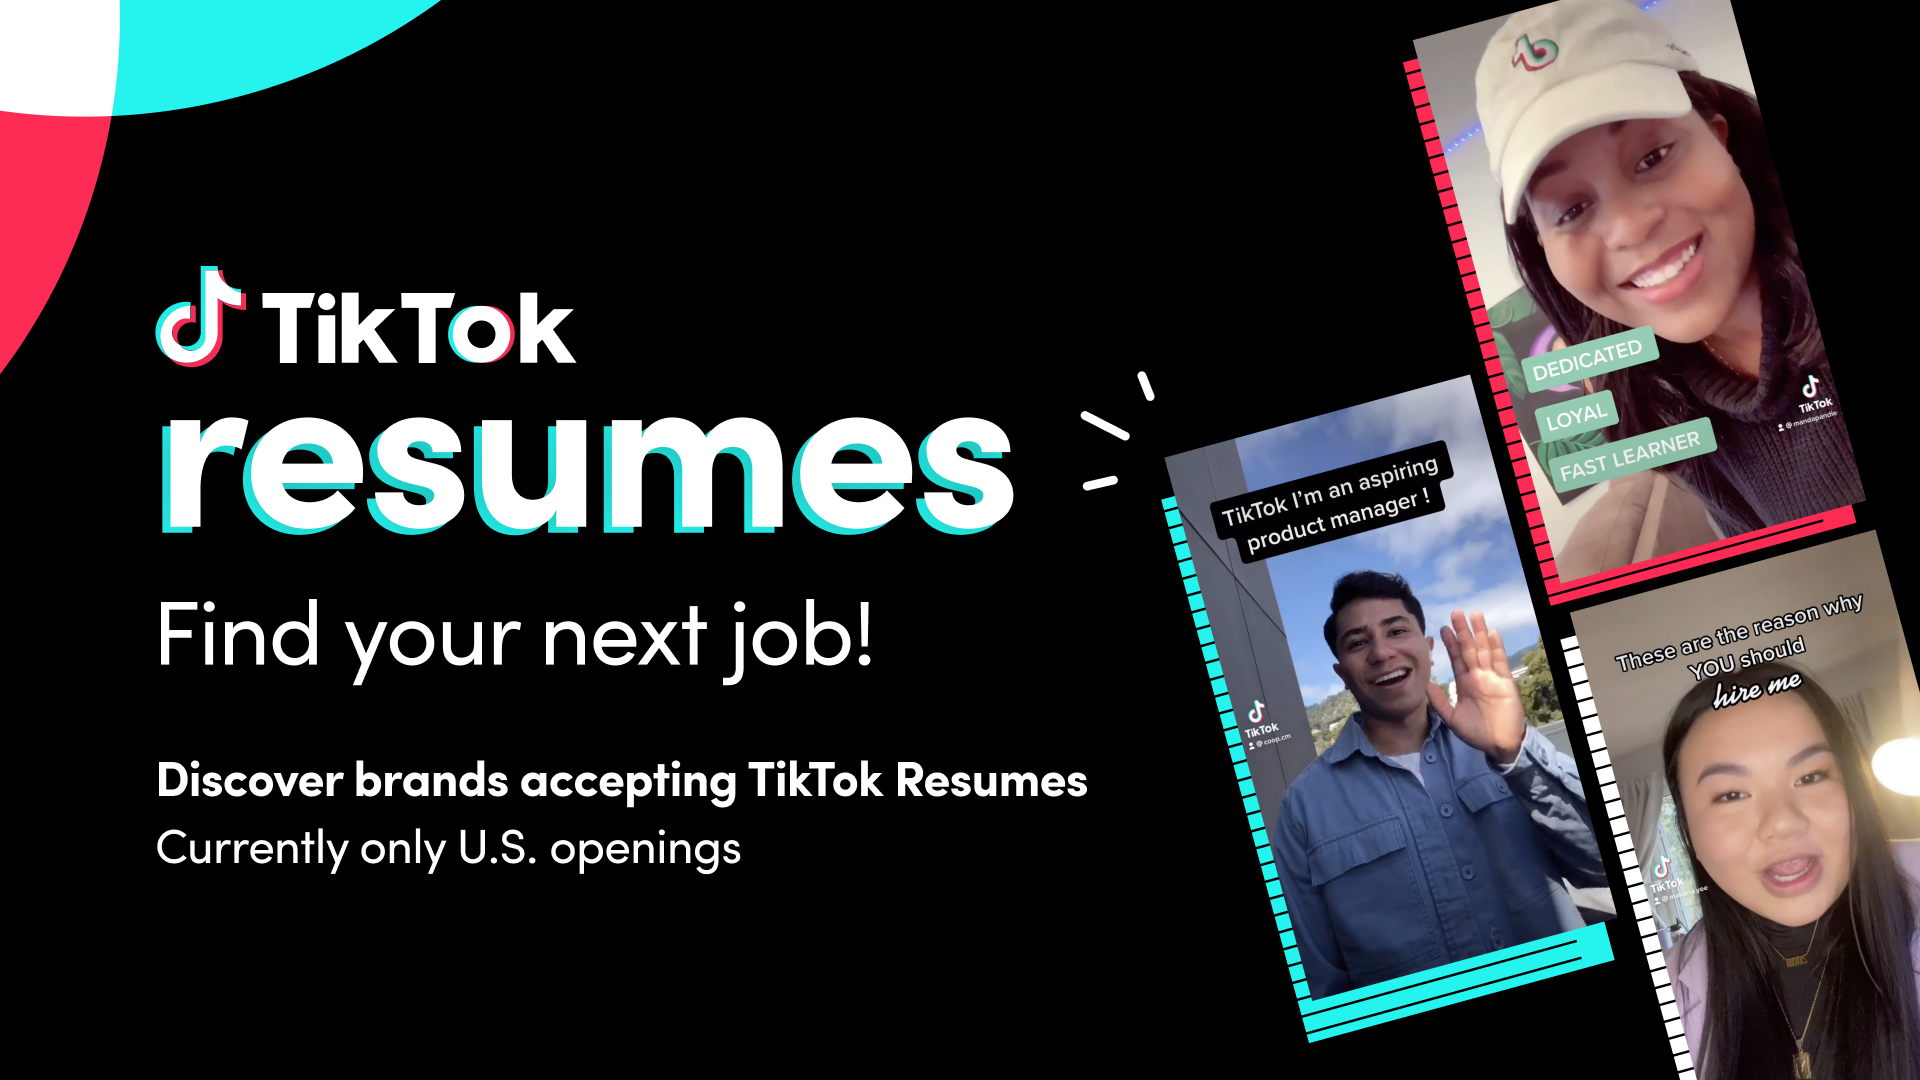 TikTok разработал новую функцию, с помощью которой через приложение можно подать видео-заявку на работу. Пока только в США